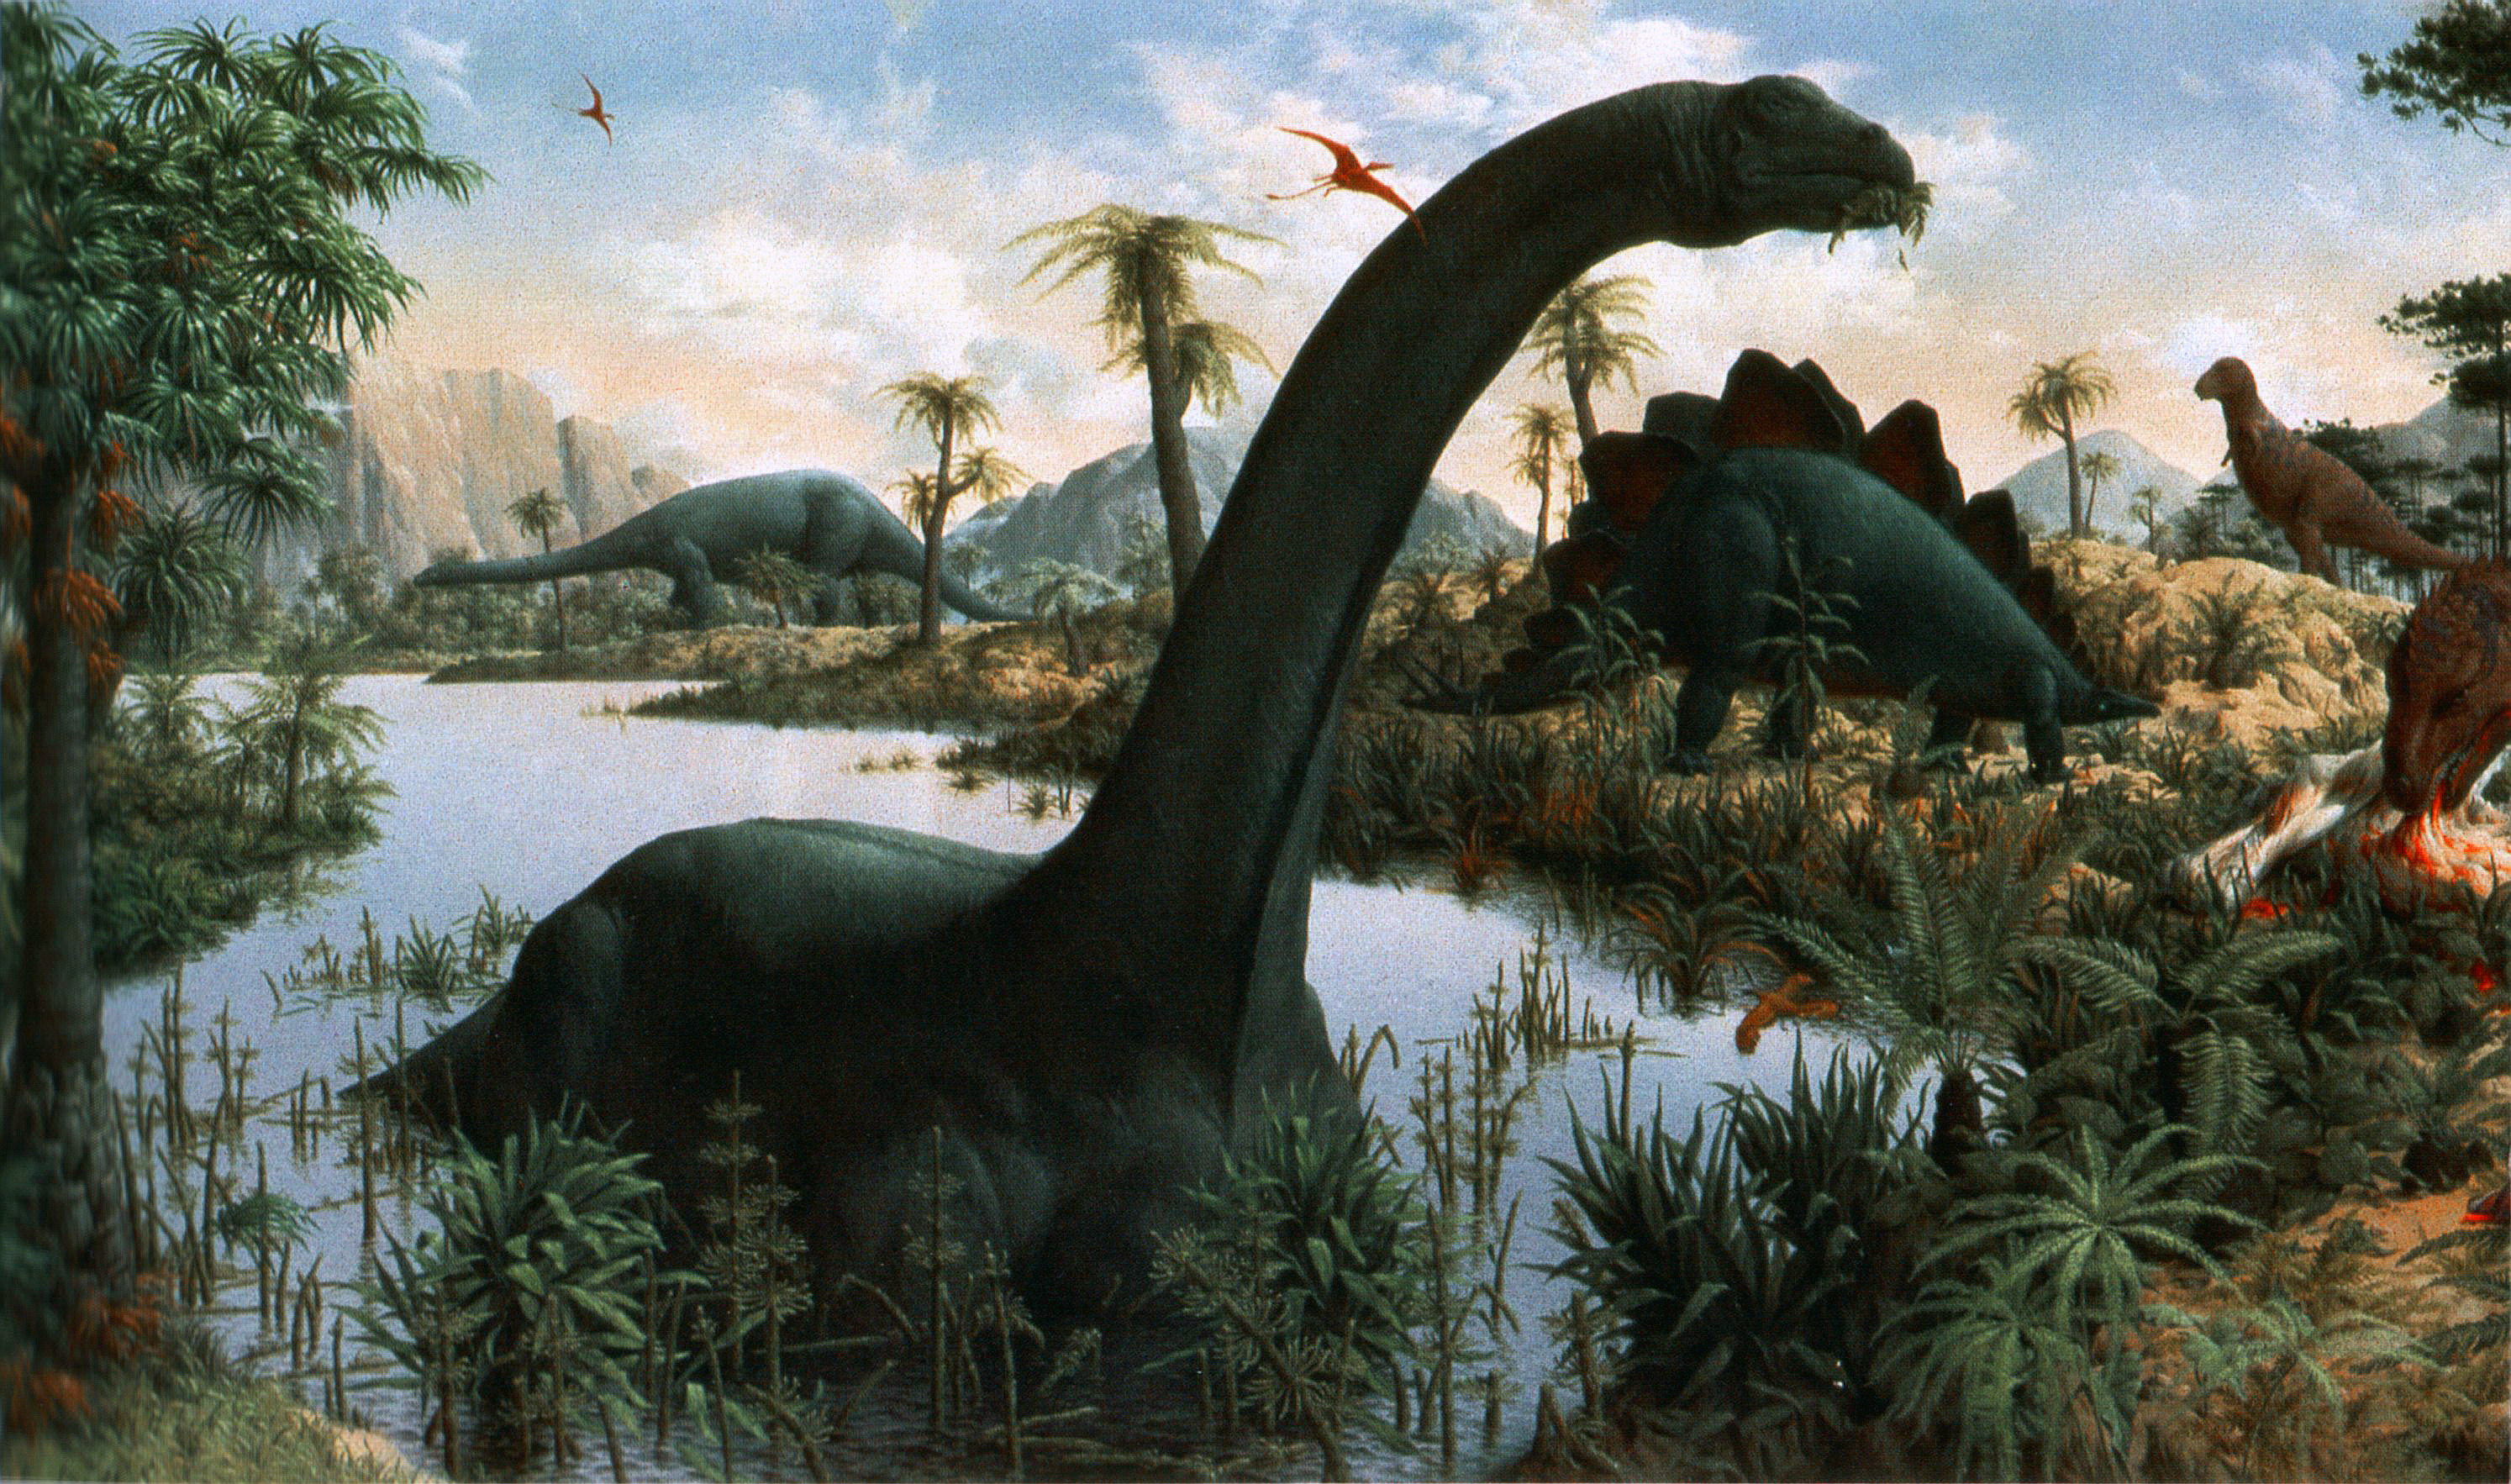 Динозавры жили миллионов лет назад. Мезозойская Эра Триасовый Юрский. Юрский период мезозойской эры. Мезозойская Эра Юрский период меловой период. Животные Юрского периода мезозойской эры.